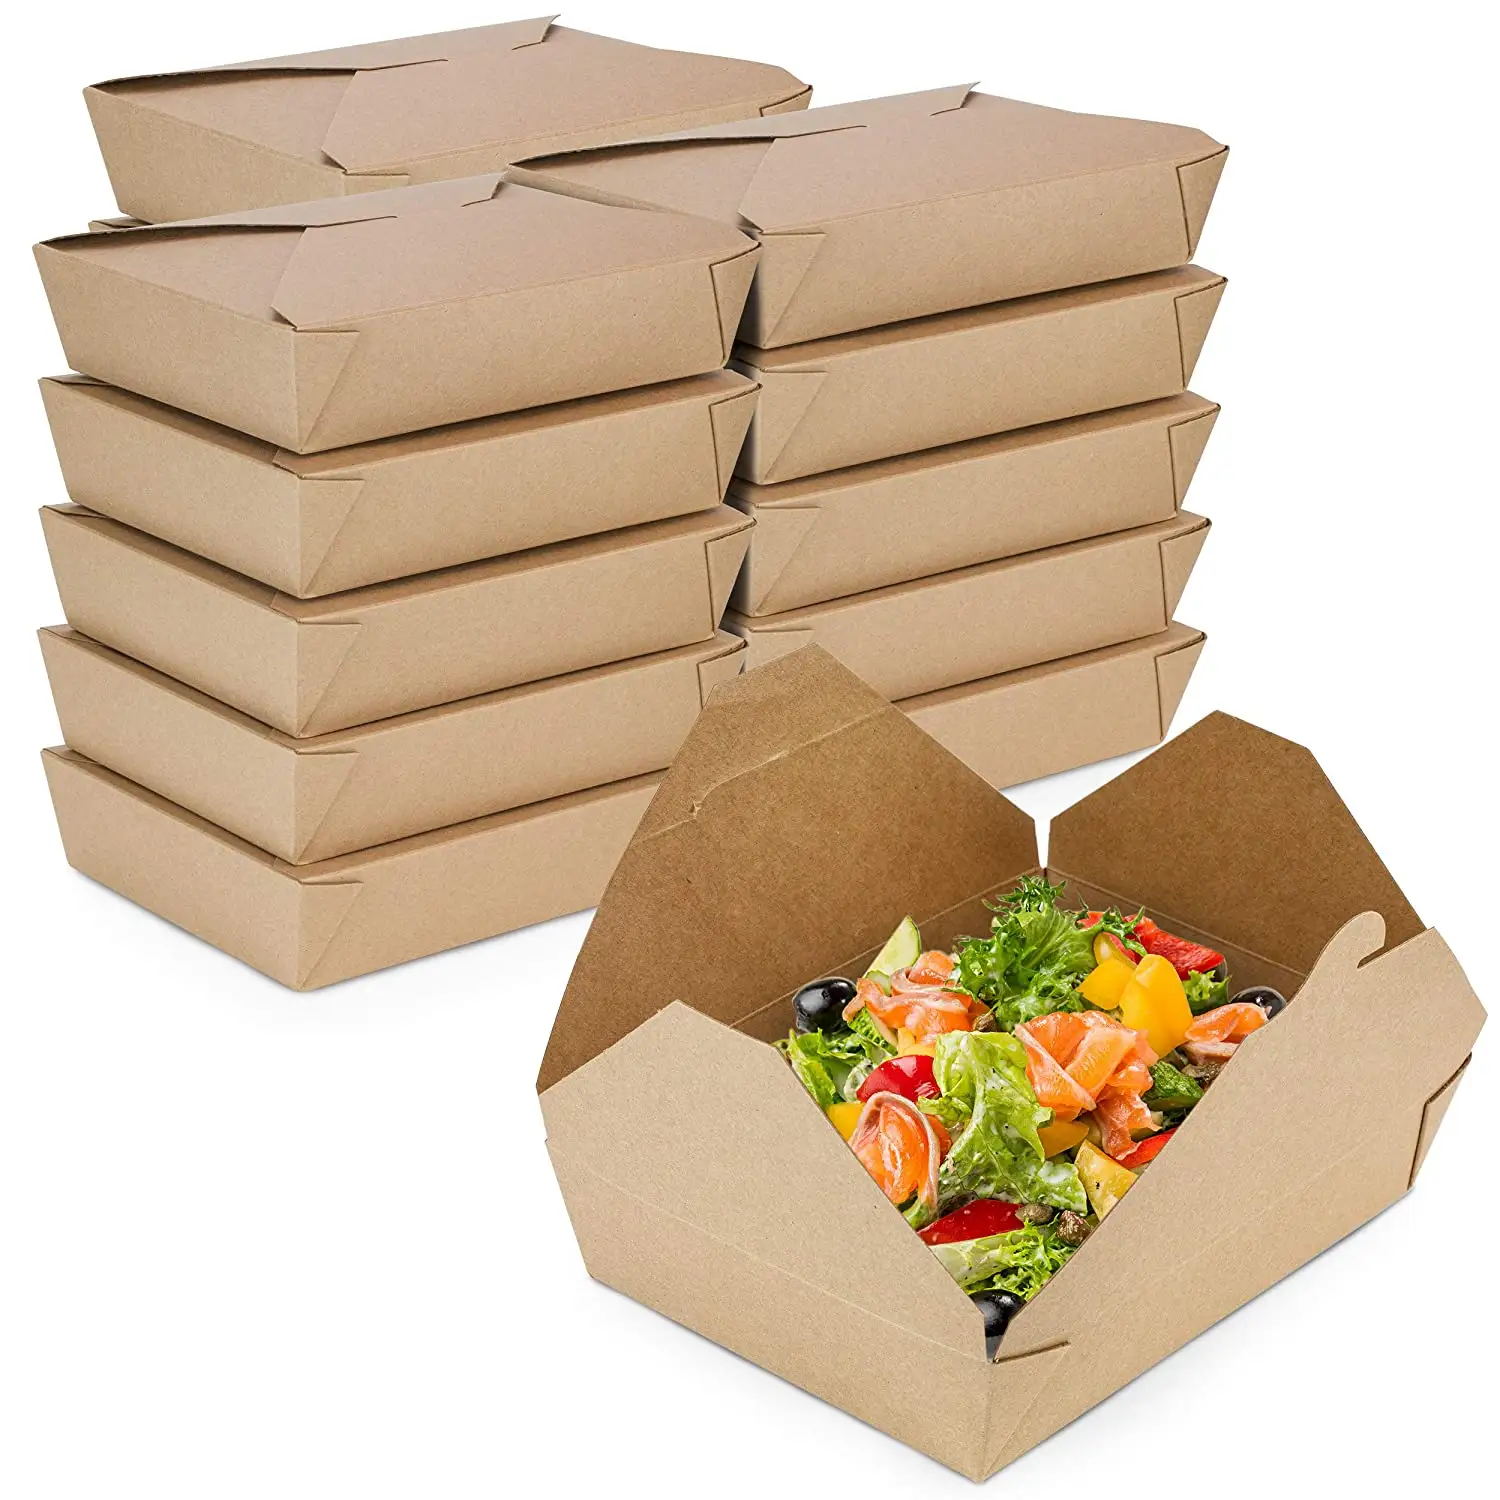 54 унции бумажных контейнеров для выноса 8,5x6x2 дюйма-контейнеры из крафтовой бумаги для еды и пищи, одноразовые контейнеры для хранения в упаковке